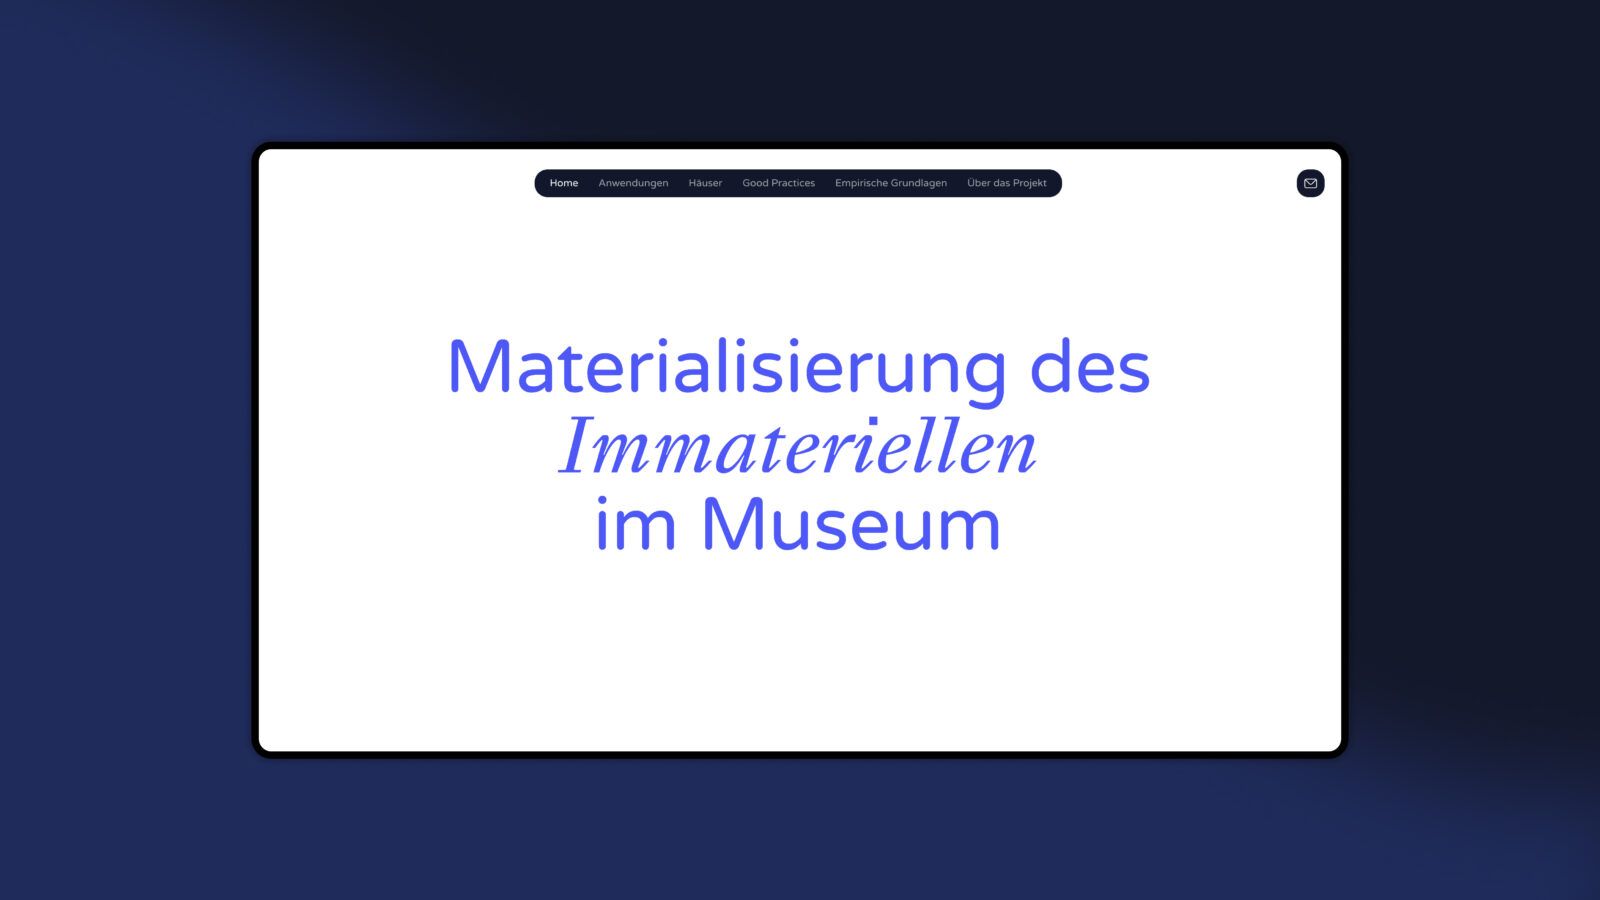 Der Screenshot zeigt die Landing Page der Plattform "Materialisierung des Immateriellen im Museum".